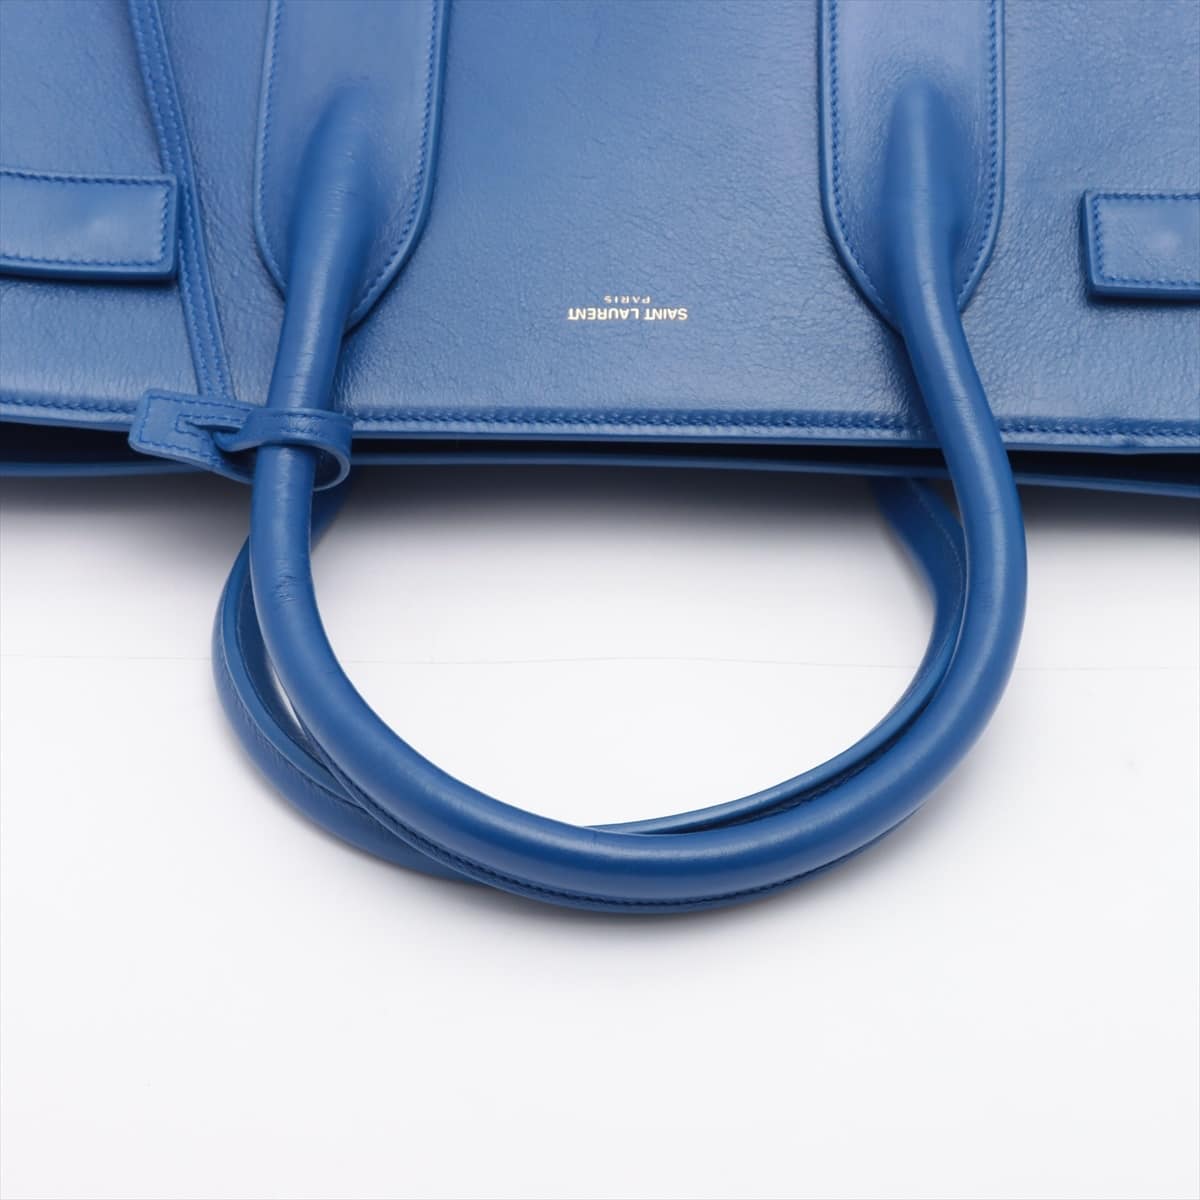 Saint Laurent Paris Sac de Jour Leather Hand bag Blue 347543